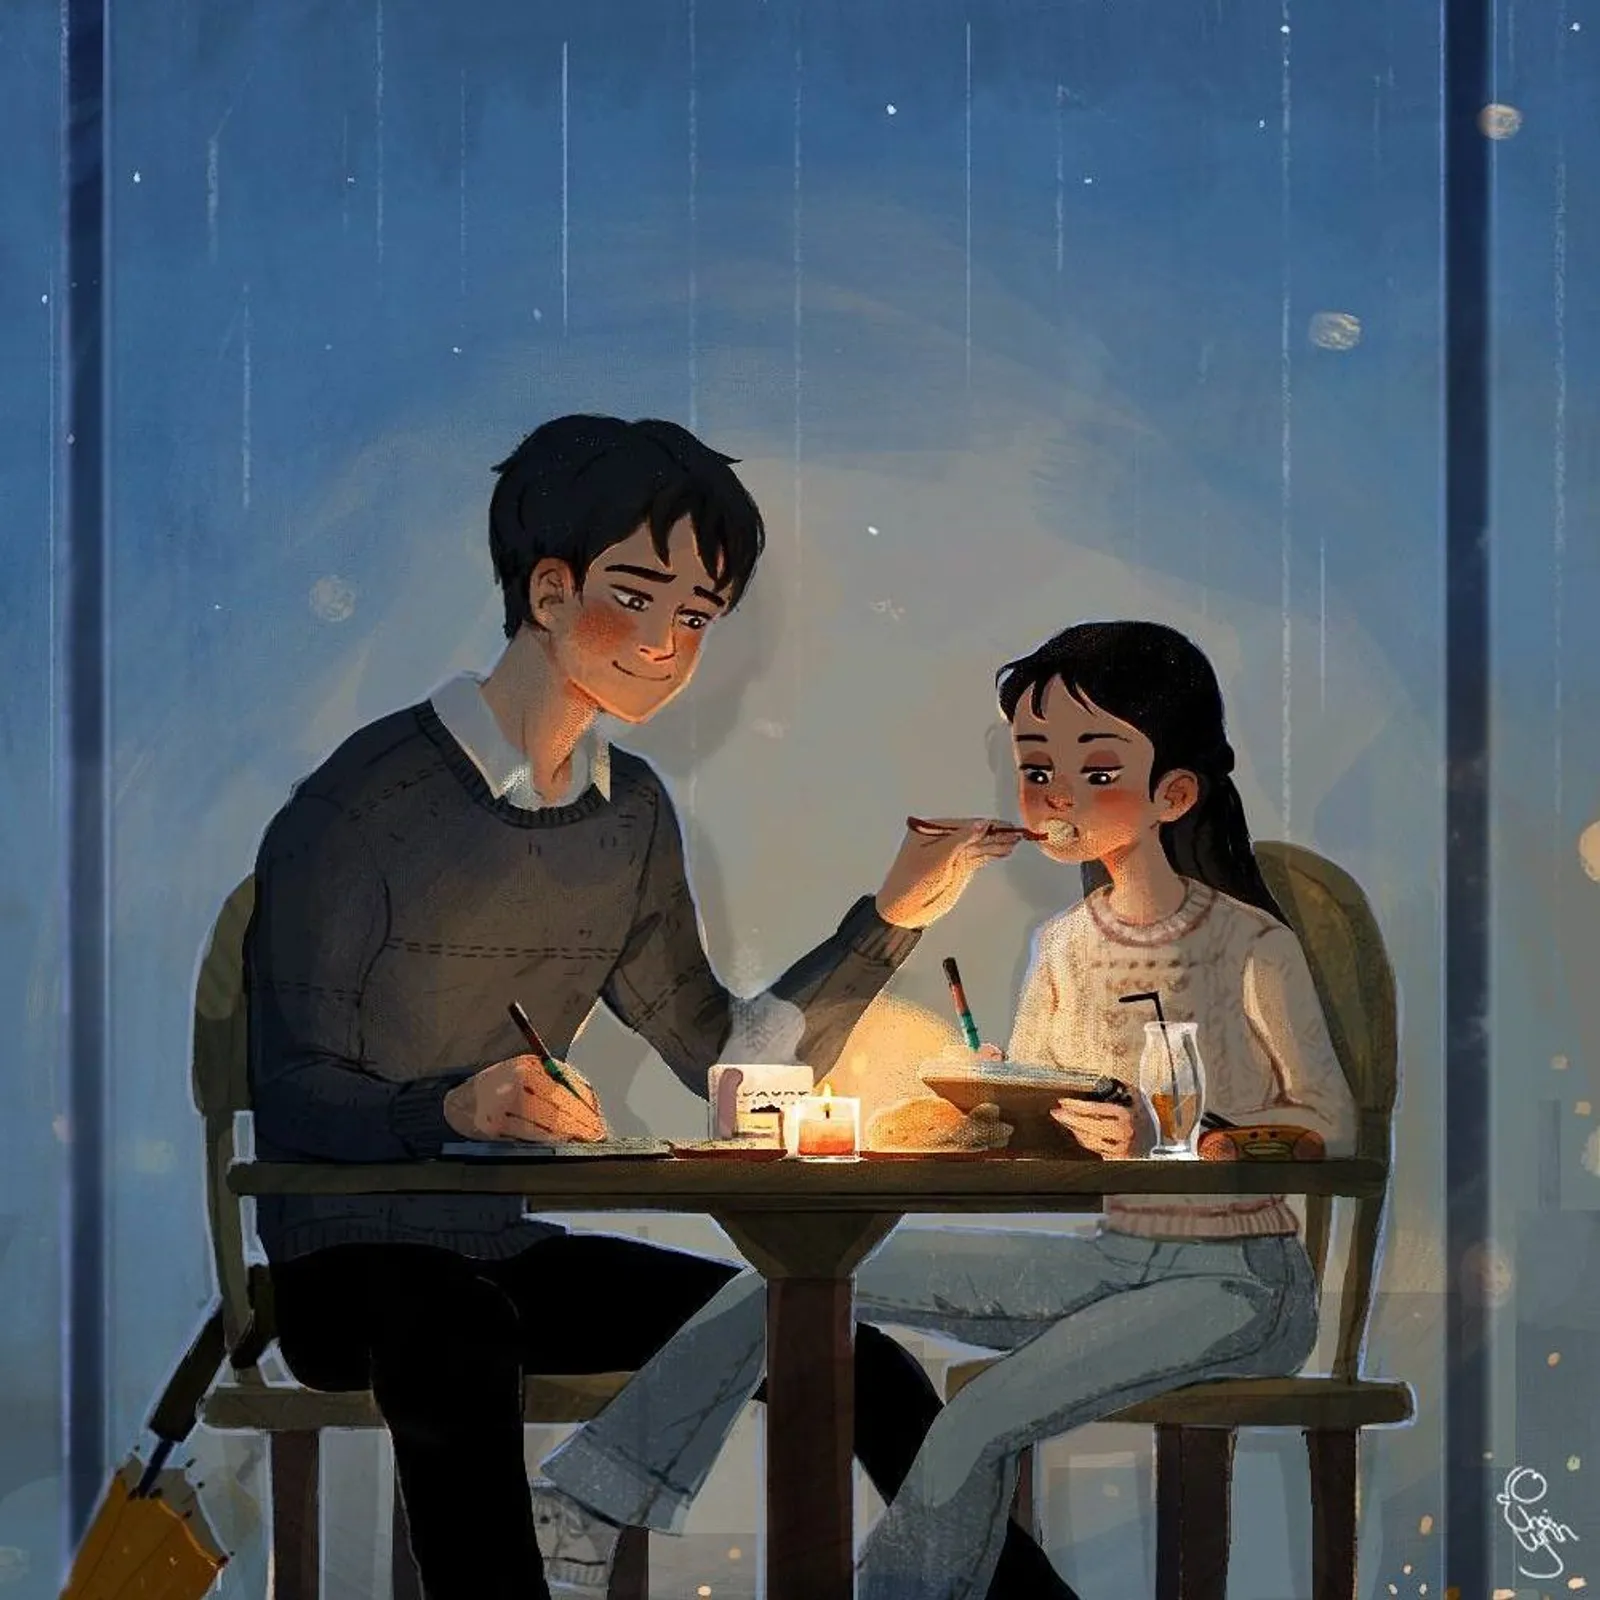 Intip Kehidupan Manis Pasangan di Korea Lewat 9 Ilustrasi Ini